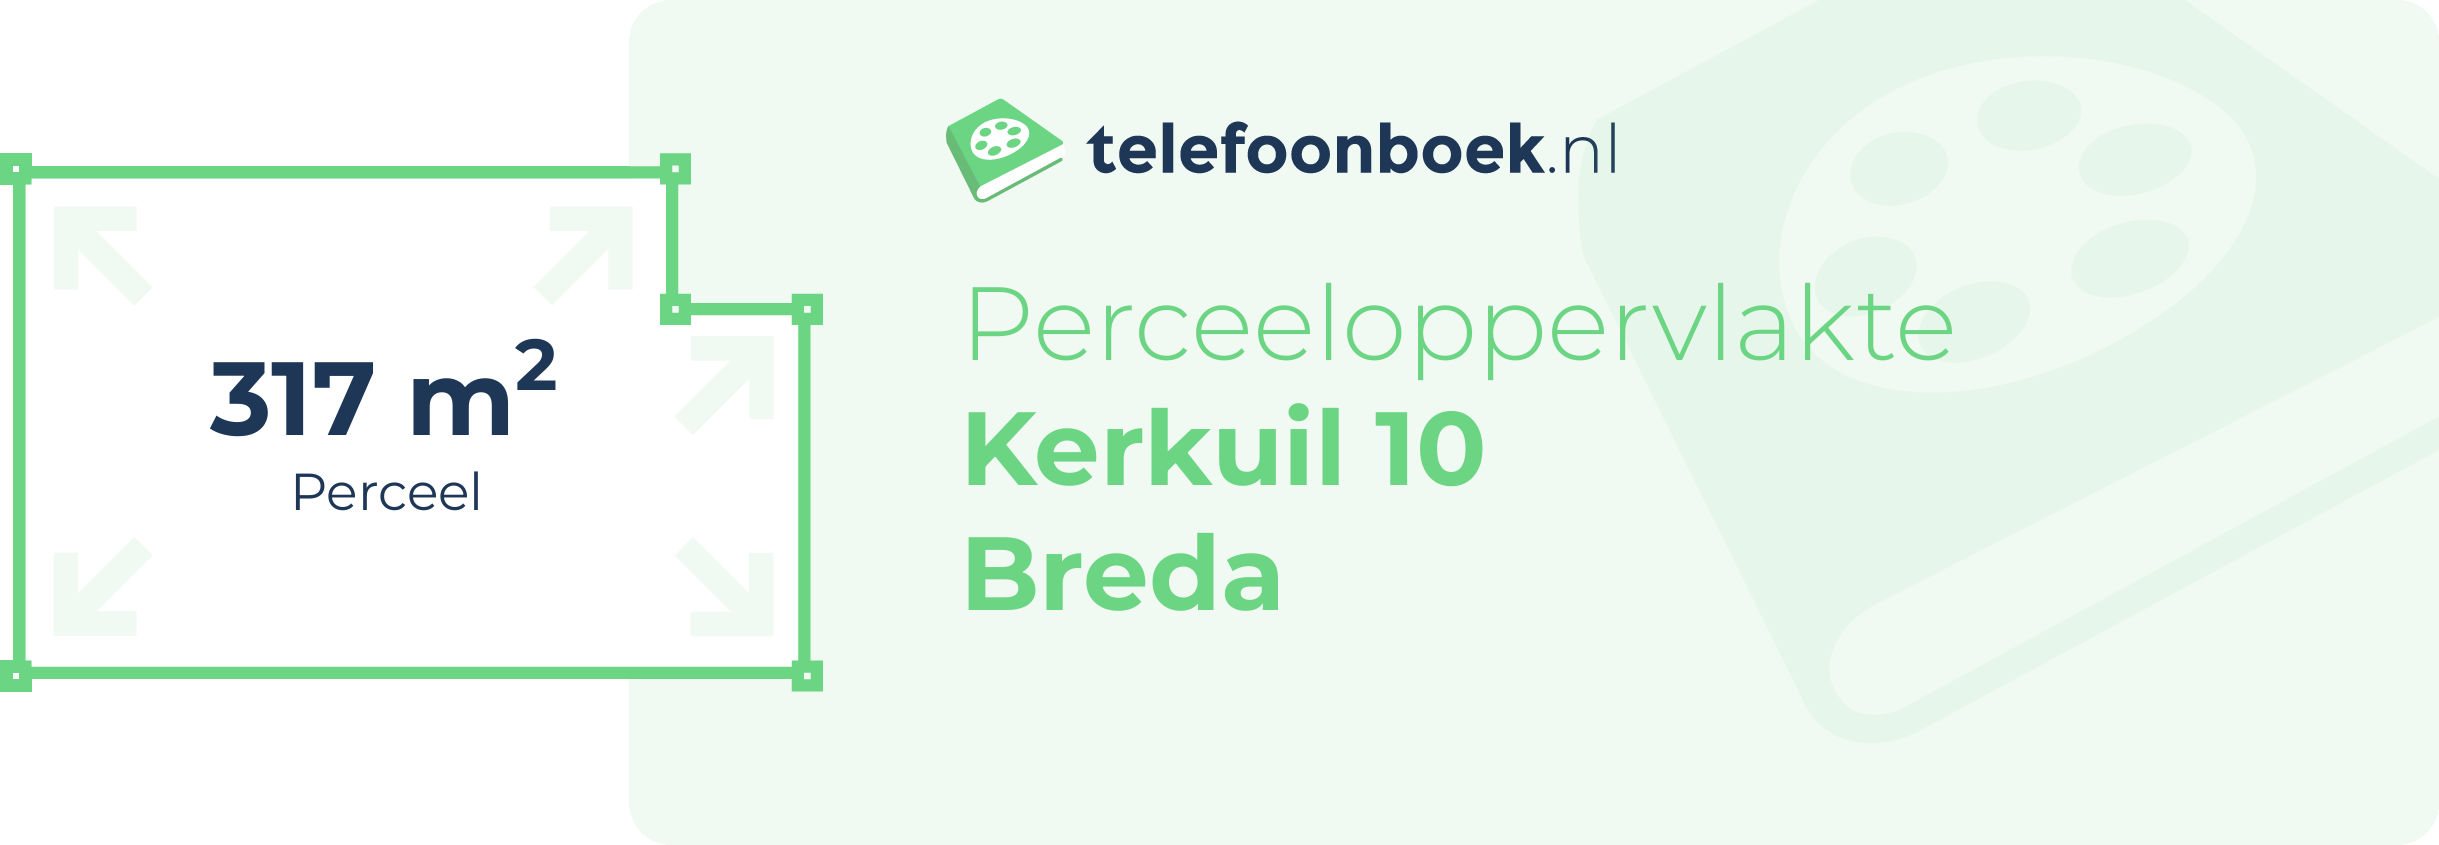 Perceeloppervlakte Kerkuil 10 Breda